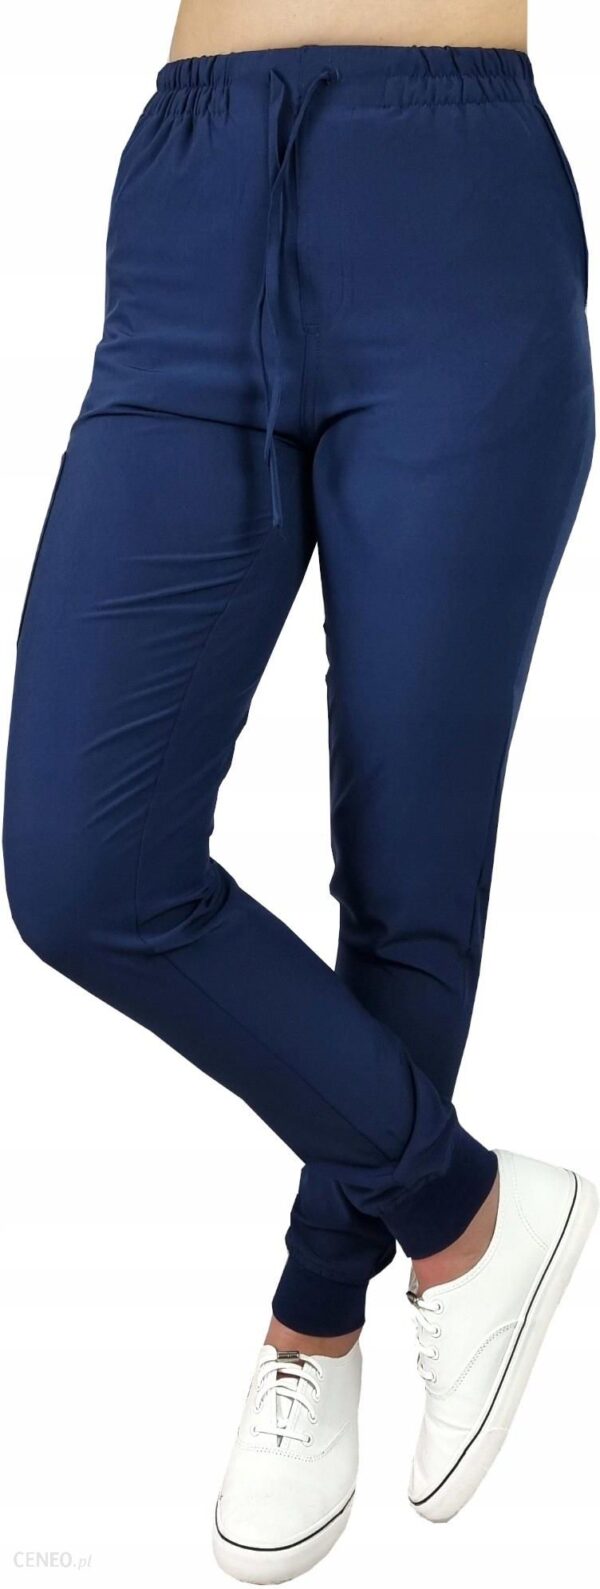 M&C Spodnie Medyczne Elastyczne Granat Comfort Fit Xl